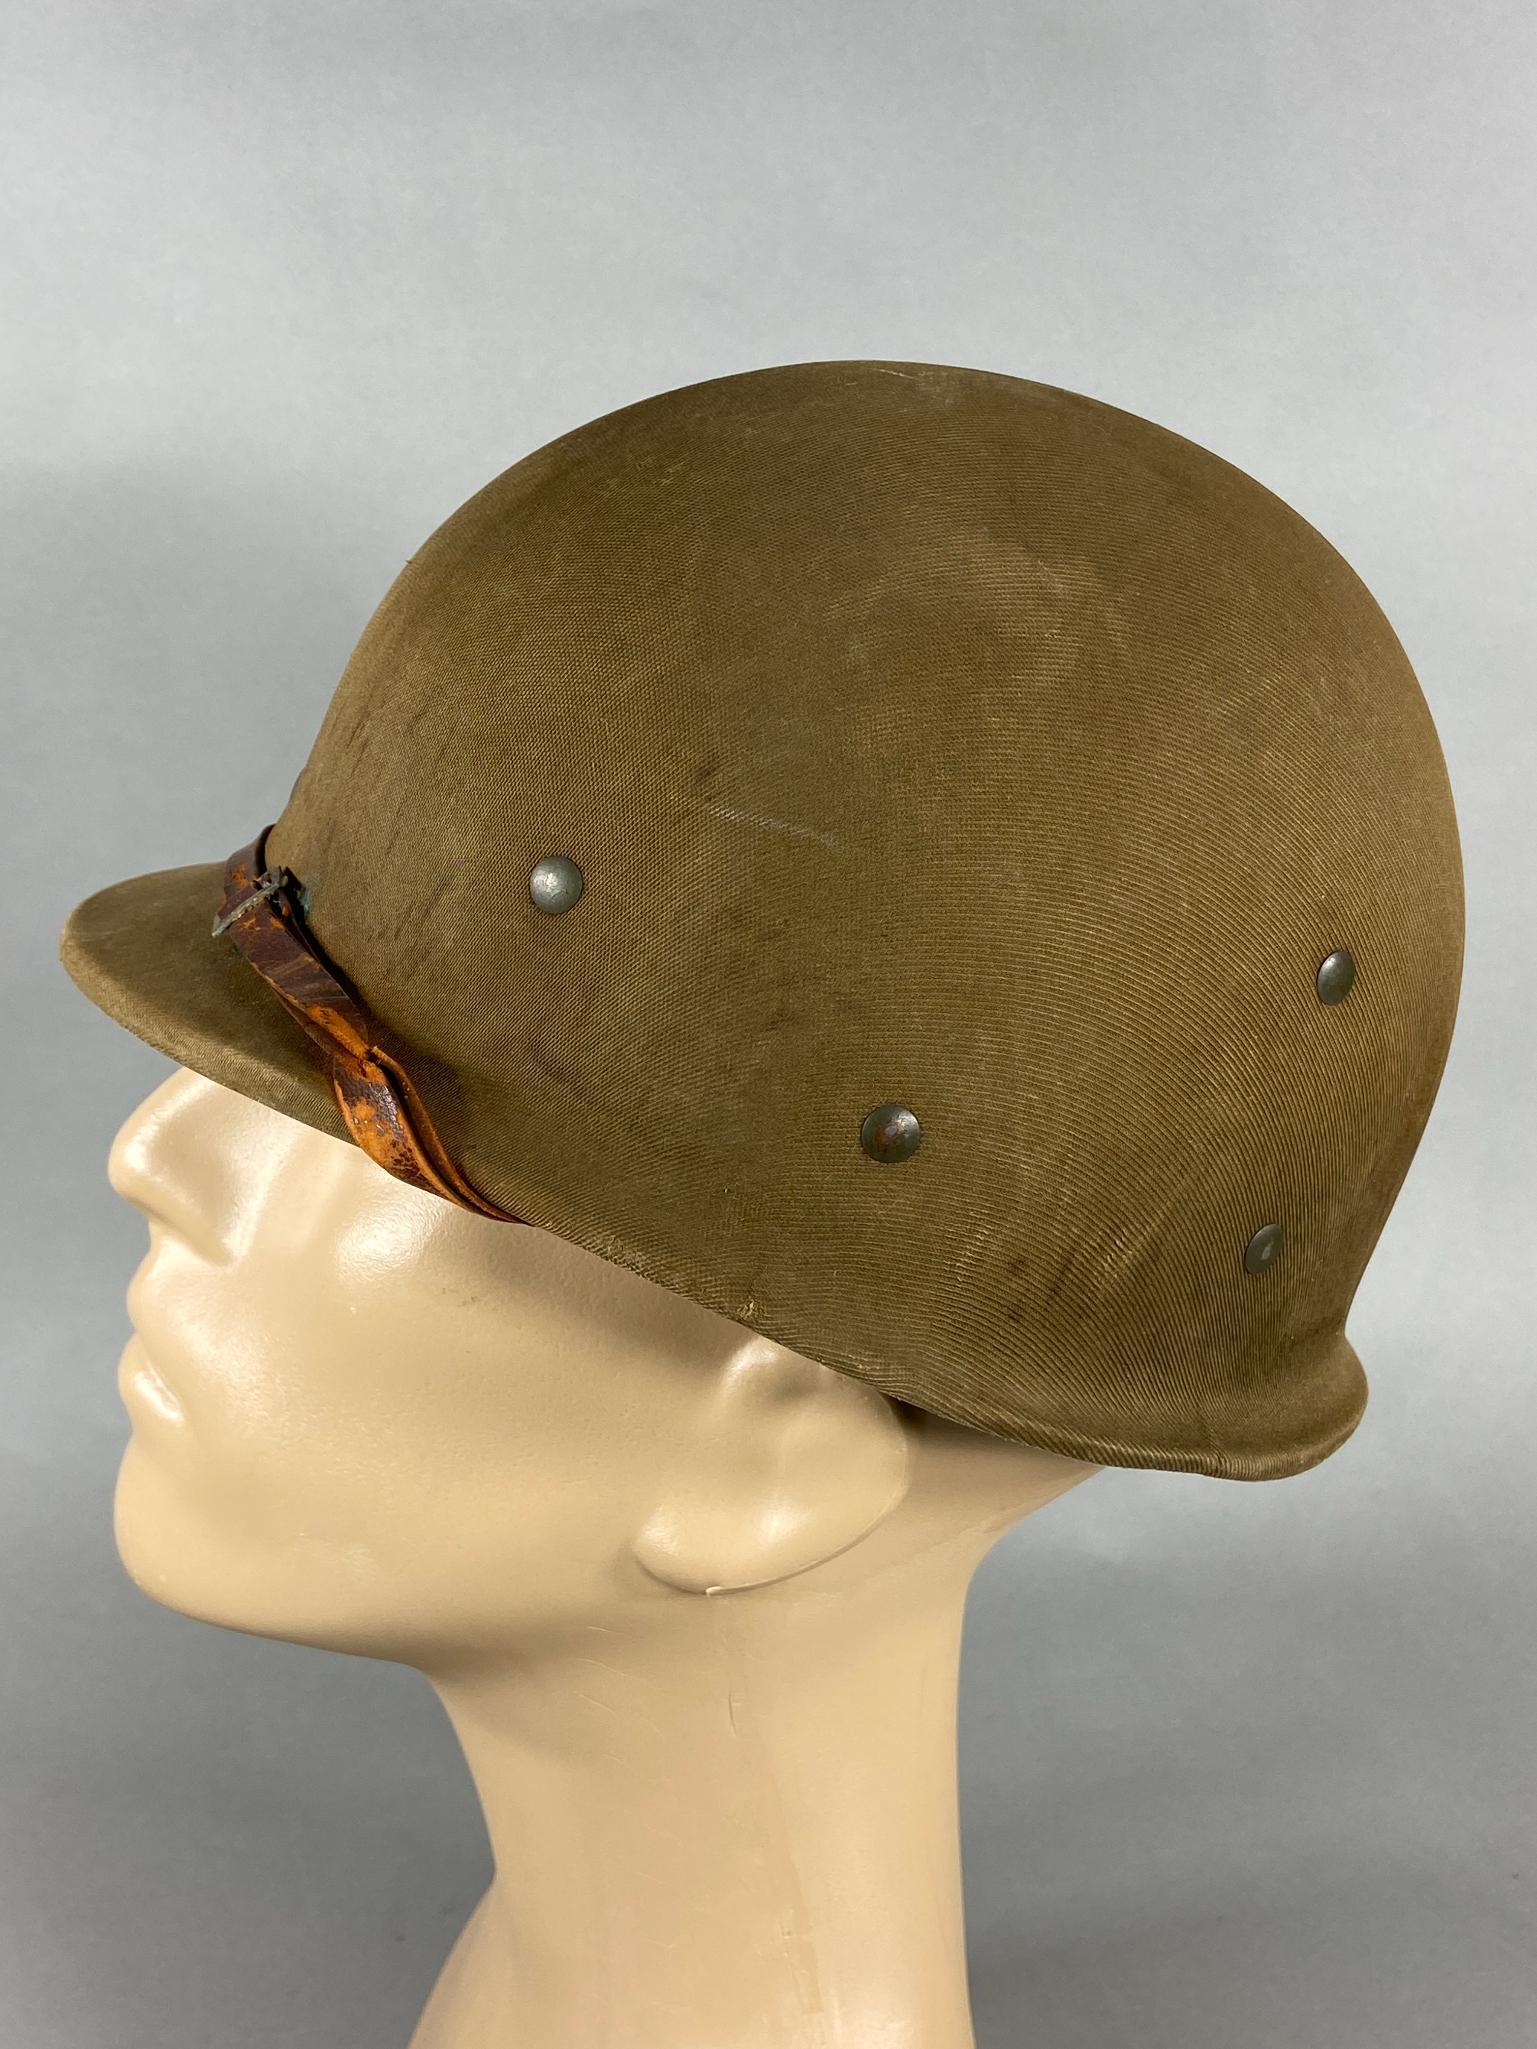 WWII US M1 HAWLEY HELMET LINER - IDED KIA 95TH ID 378TH REGIMENT